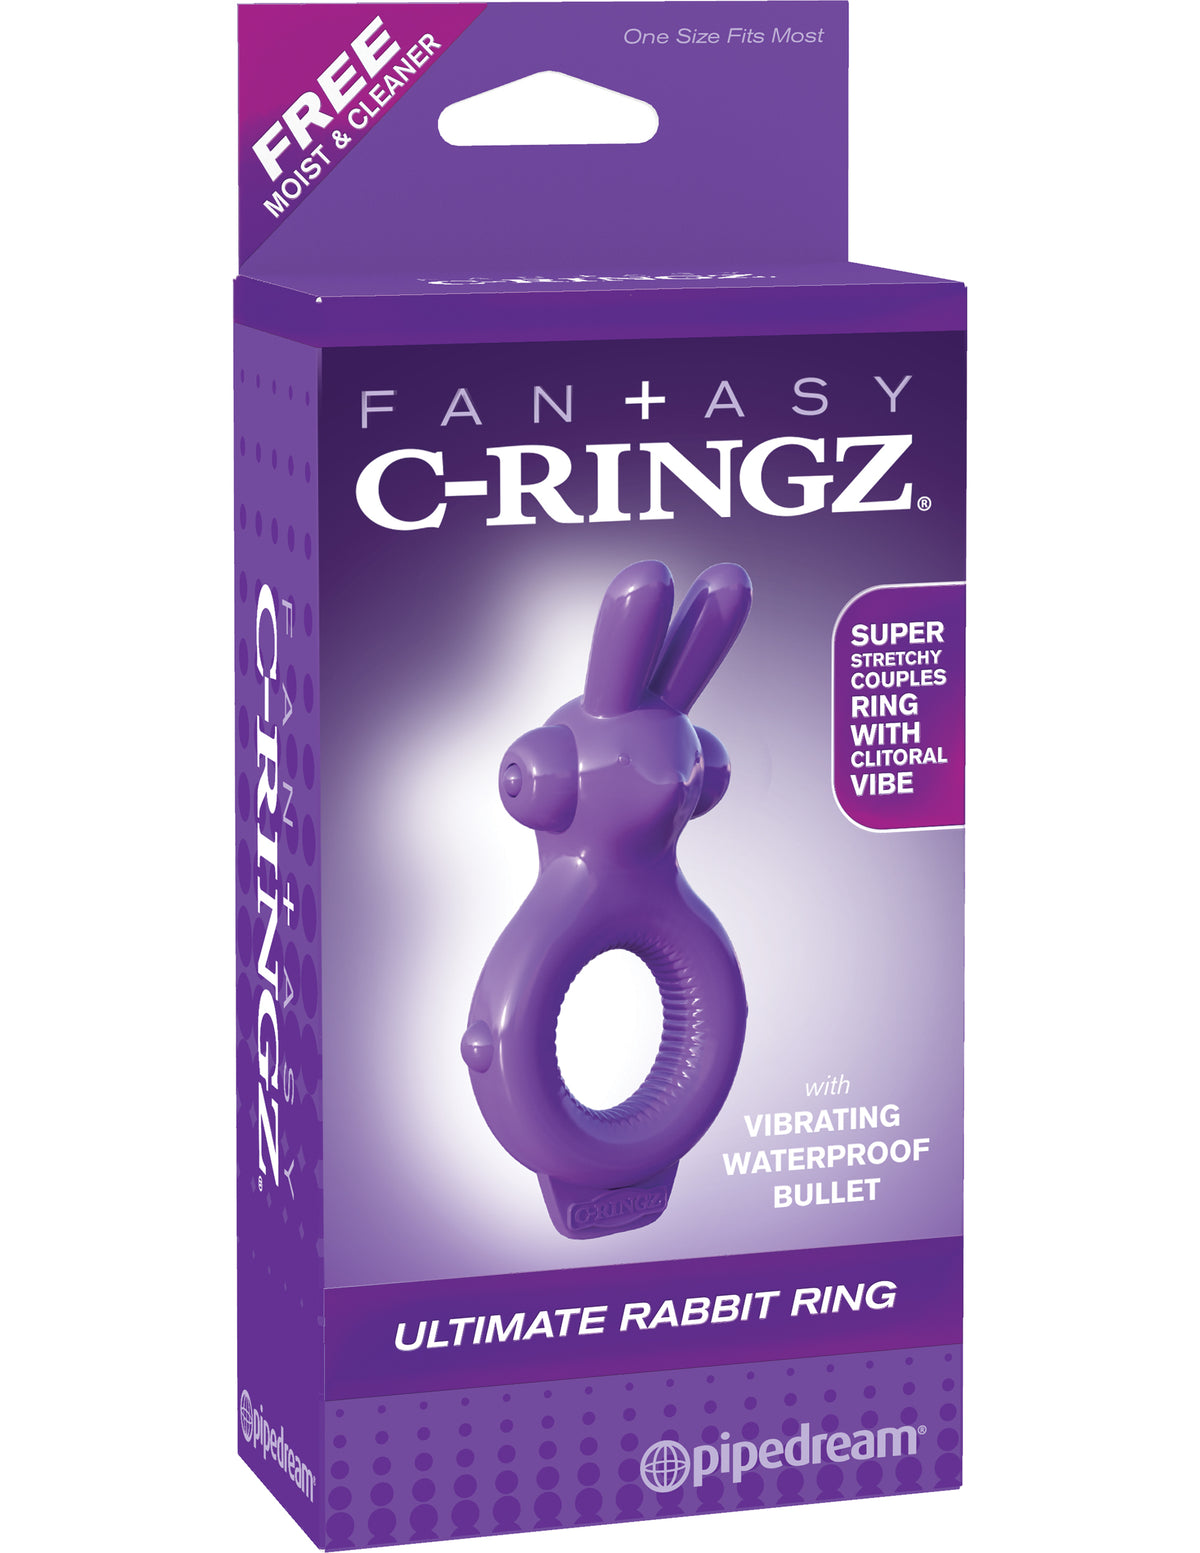 Fantasy C-ringz Rabbit Ring